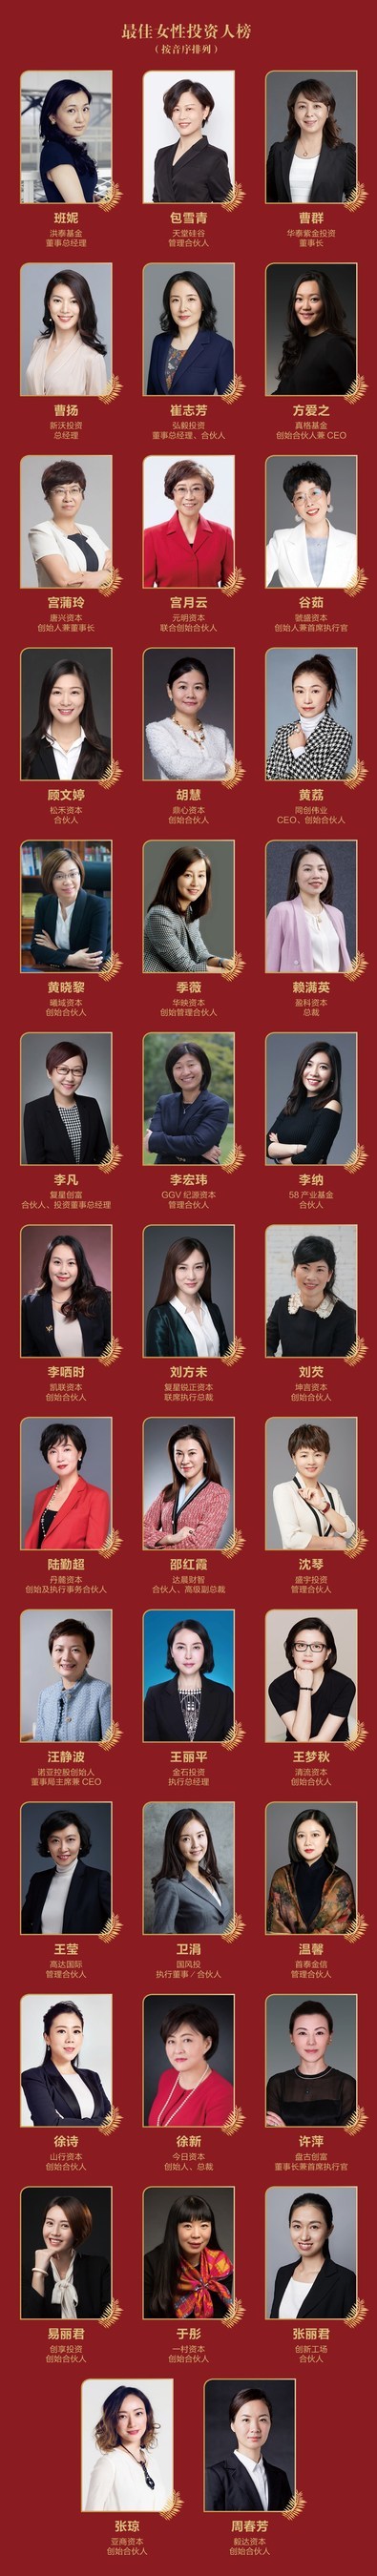 融资中国2020年度“最佳女性投资人”榜单发布 | 美通社